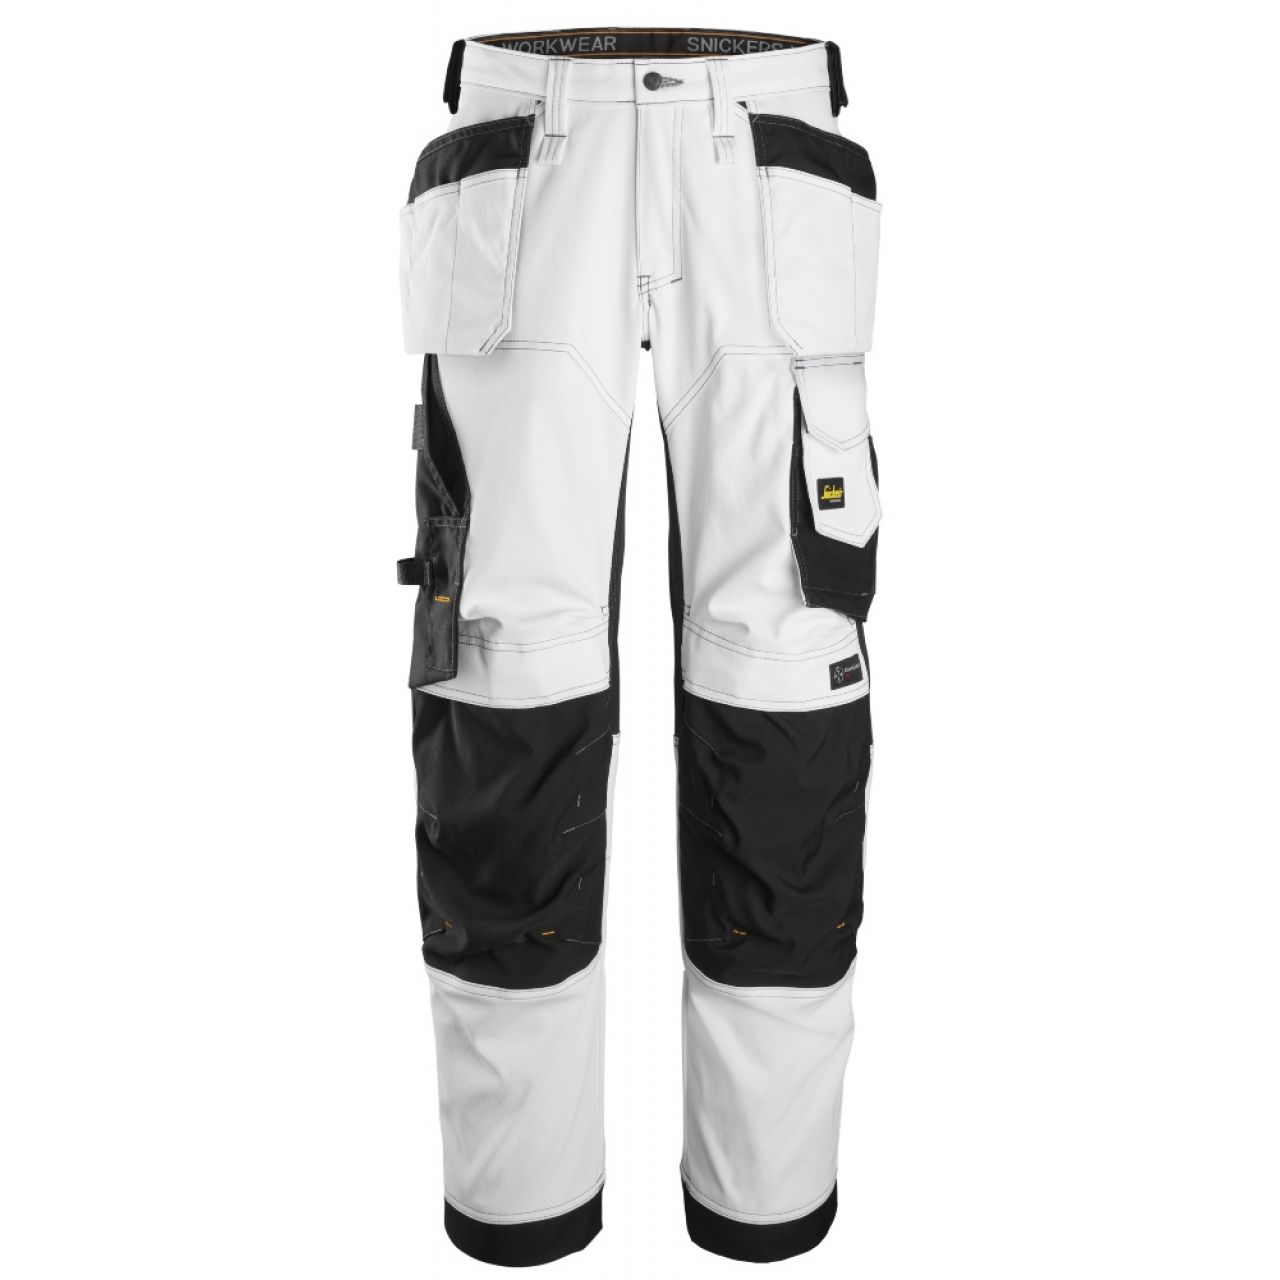 6251 Pantalones largos de trabajo elásticos de ajuste holgado con bolsillos flotantes AllroundWork blanco-negro talla 46